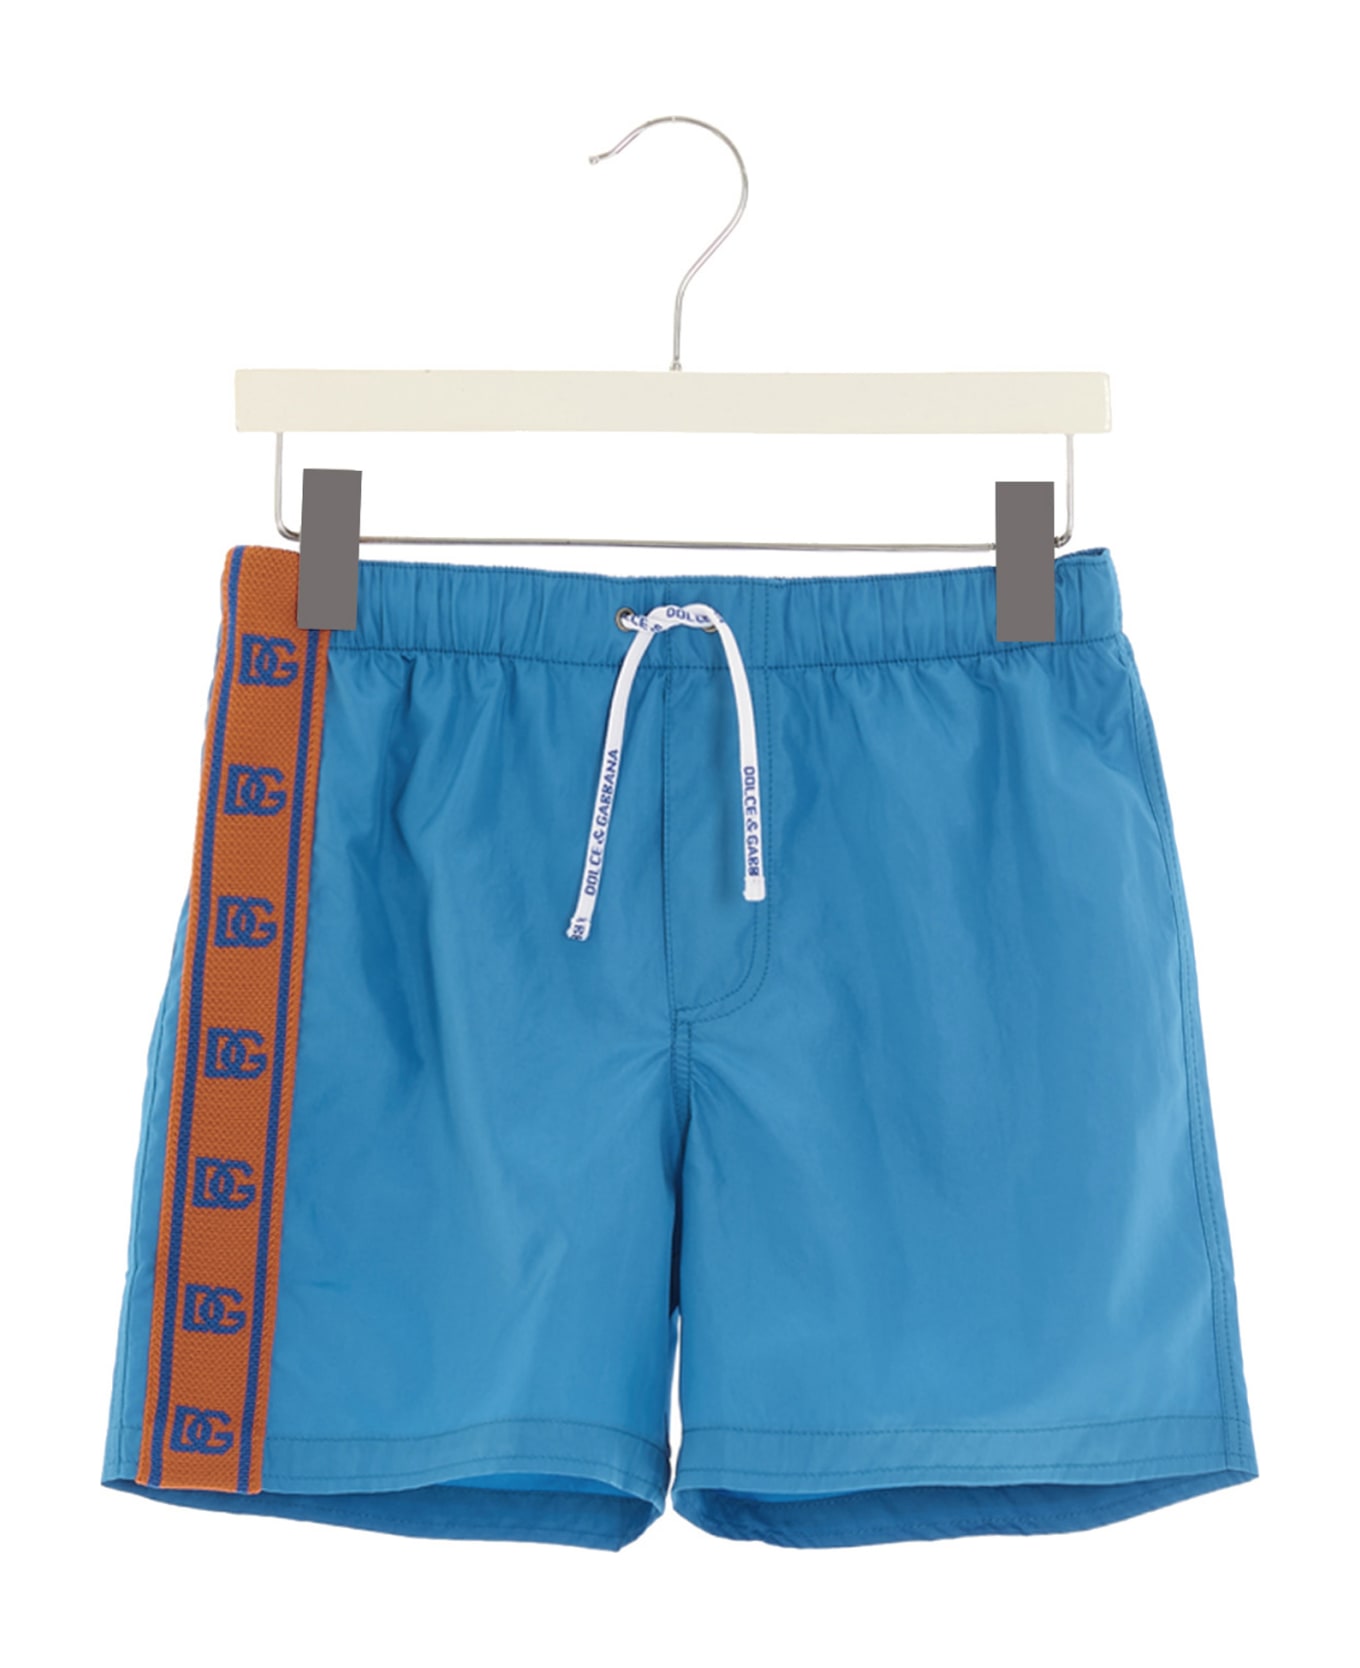 Dolce & Gabbana Side Band Beach Shorts - Light Blue